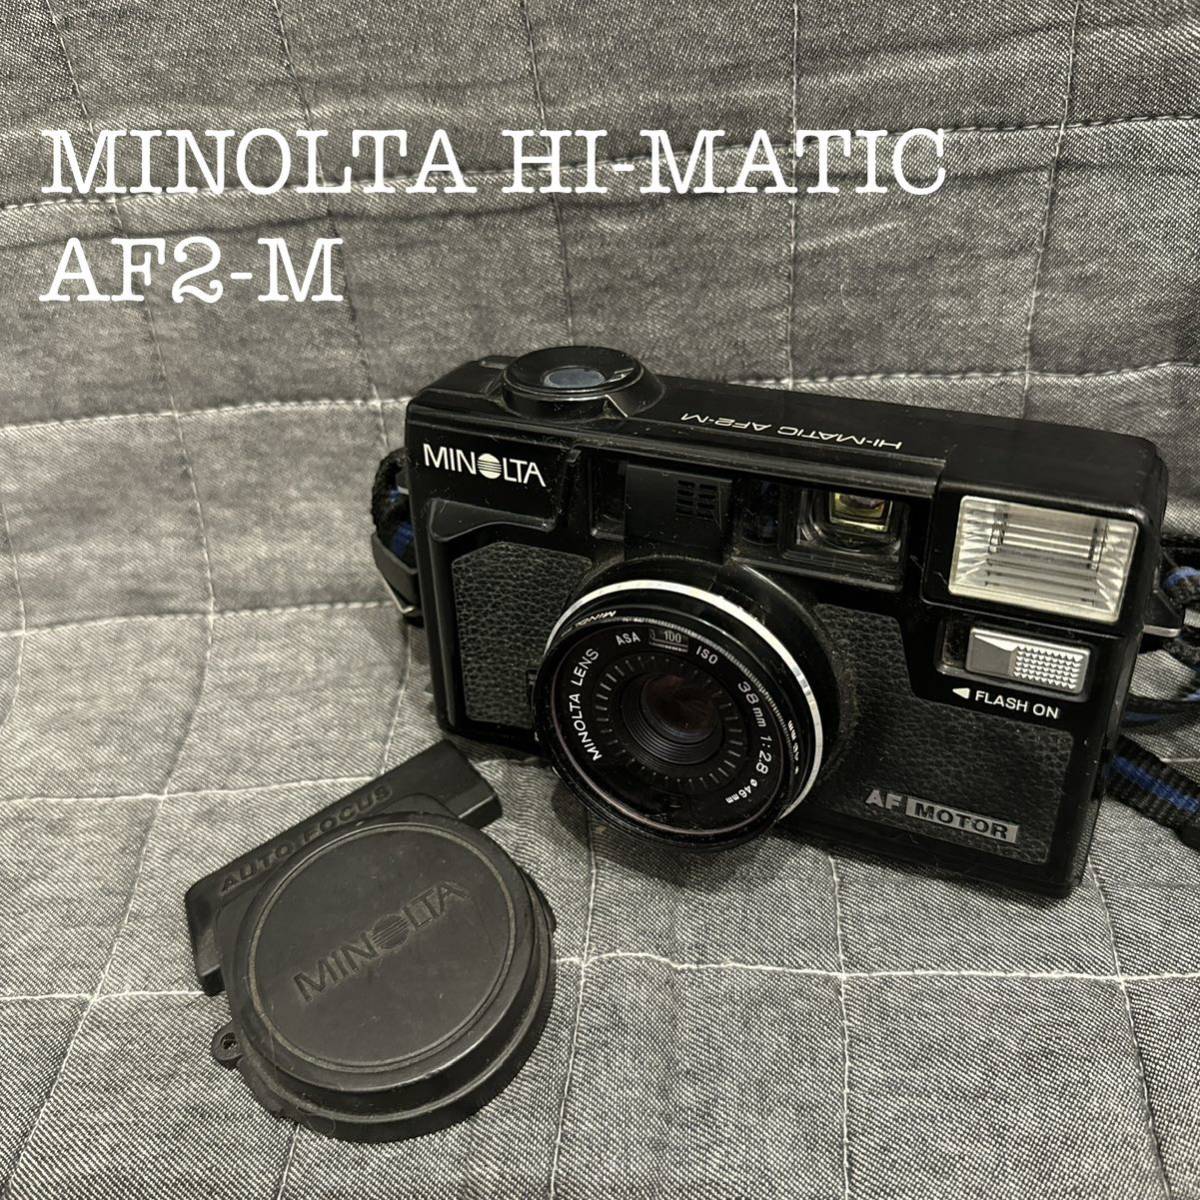 MINOLTA HI-MATIC AF2-M ミノルタ ハイマチック カメラ レンズカバー付き ジャンク_画像1